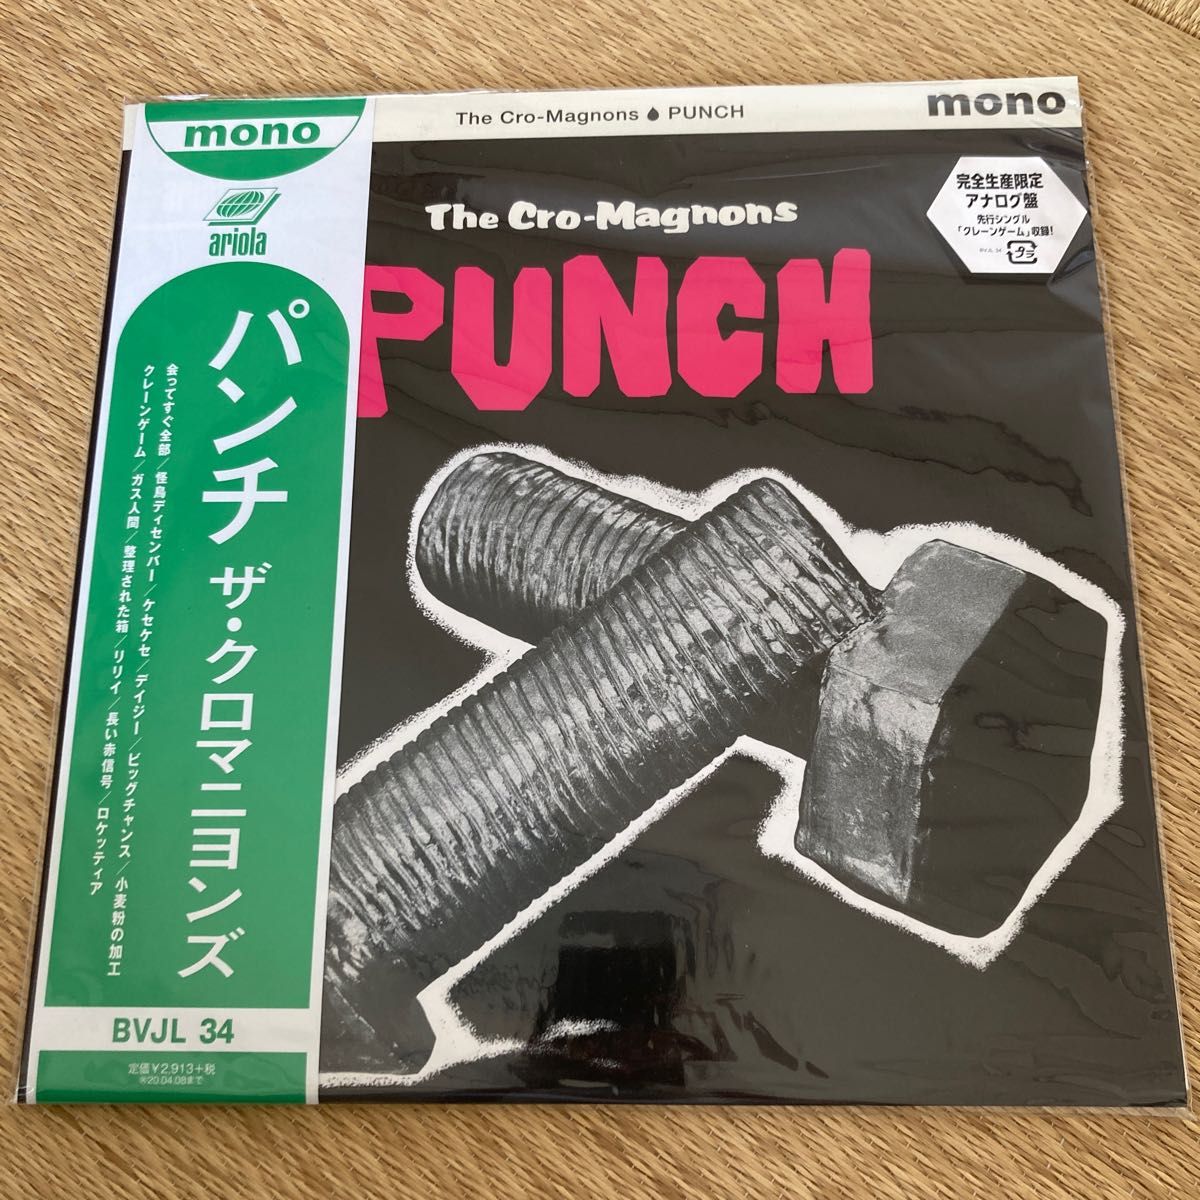 完全生産限定盤 ザクロマニヨンズ アナログレコード PUNCH 19/10/9発売 オリコン加盟店